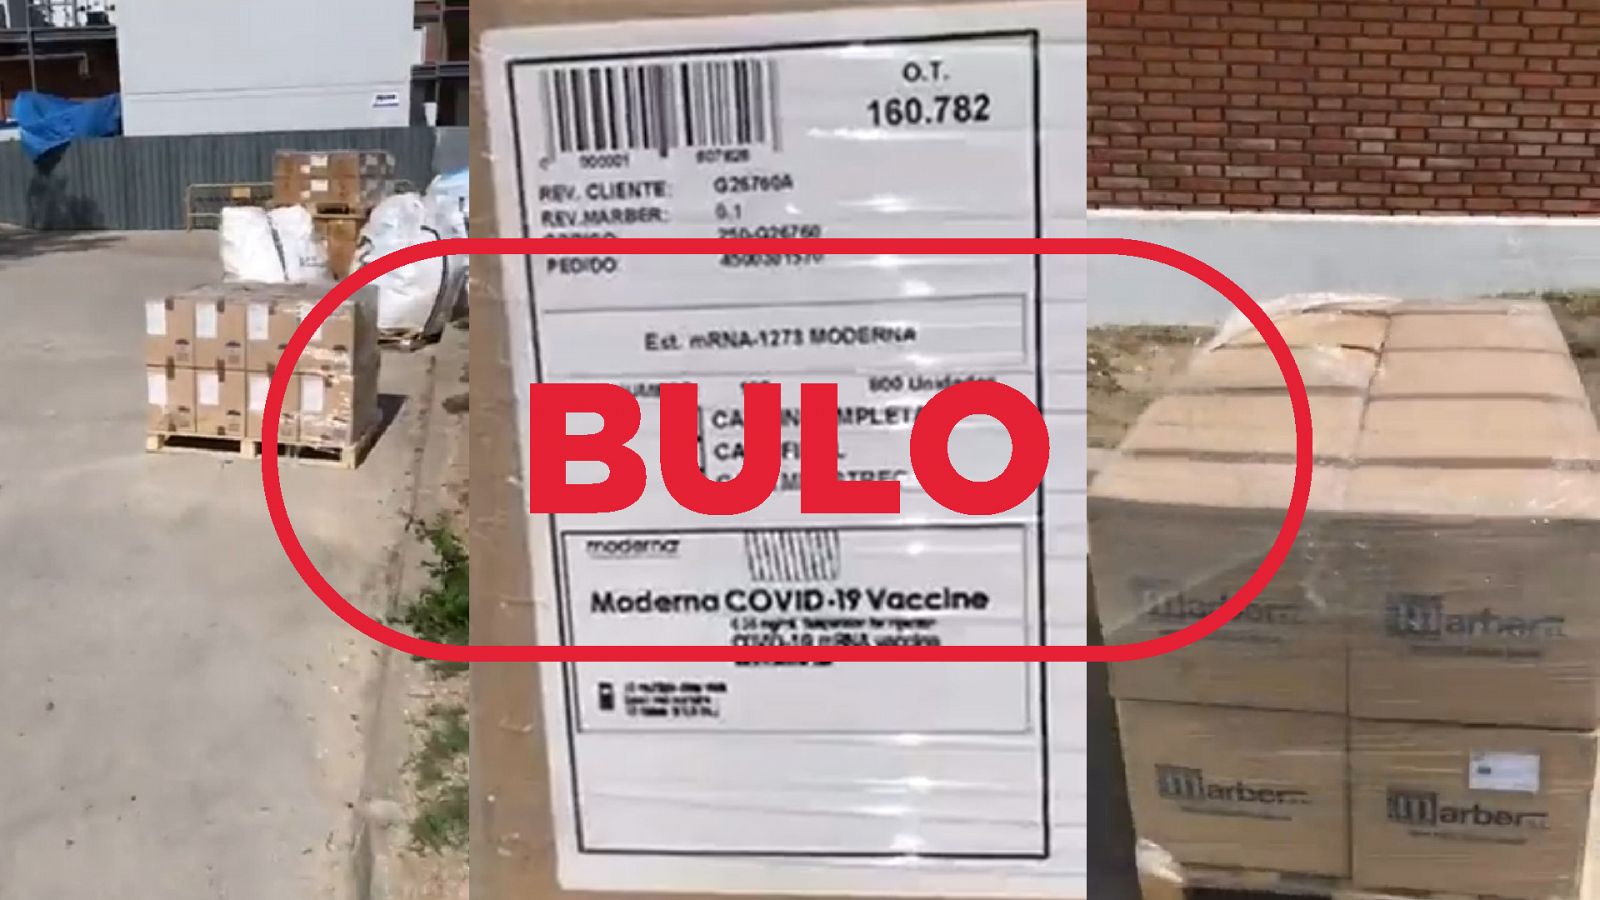 Estas cajas al sol no contienen vacunas sino los estuches para guardar los viales, es un bulo